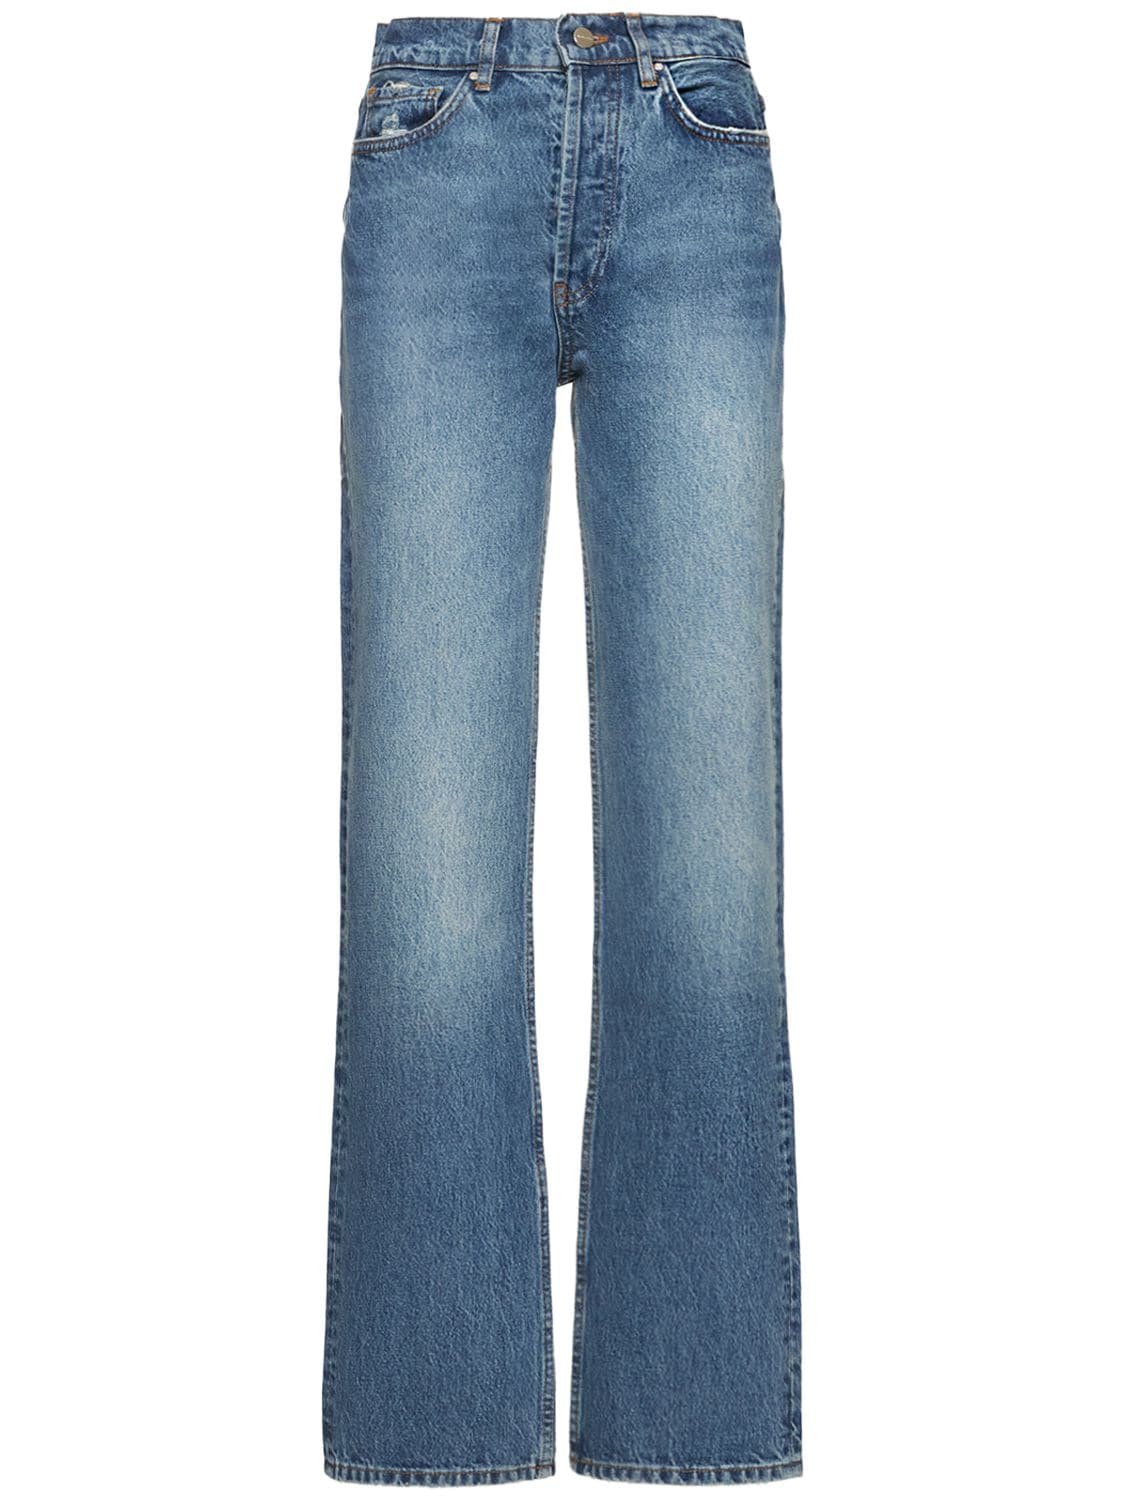 Mujer Jeans Rectos De Denim De Algodón 24 - ANINE BING - Modalova